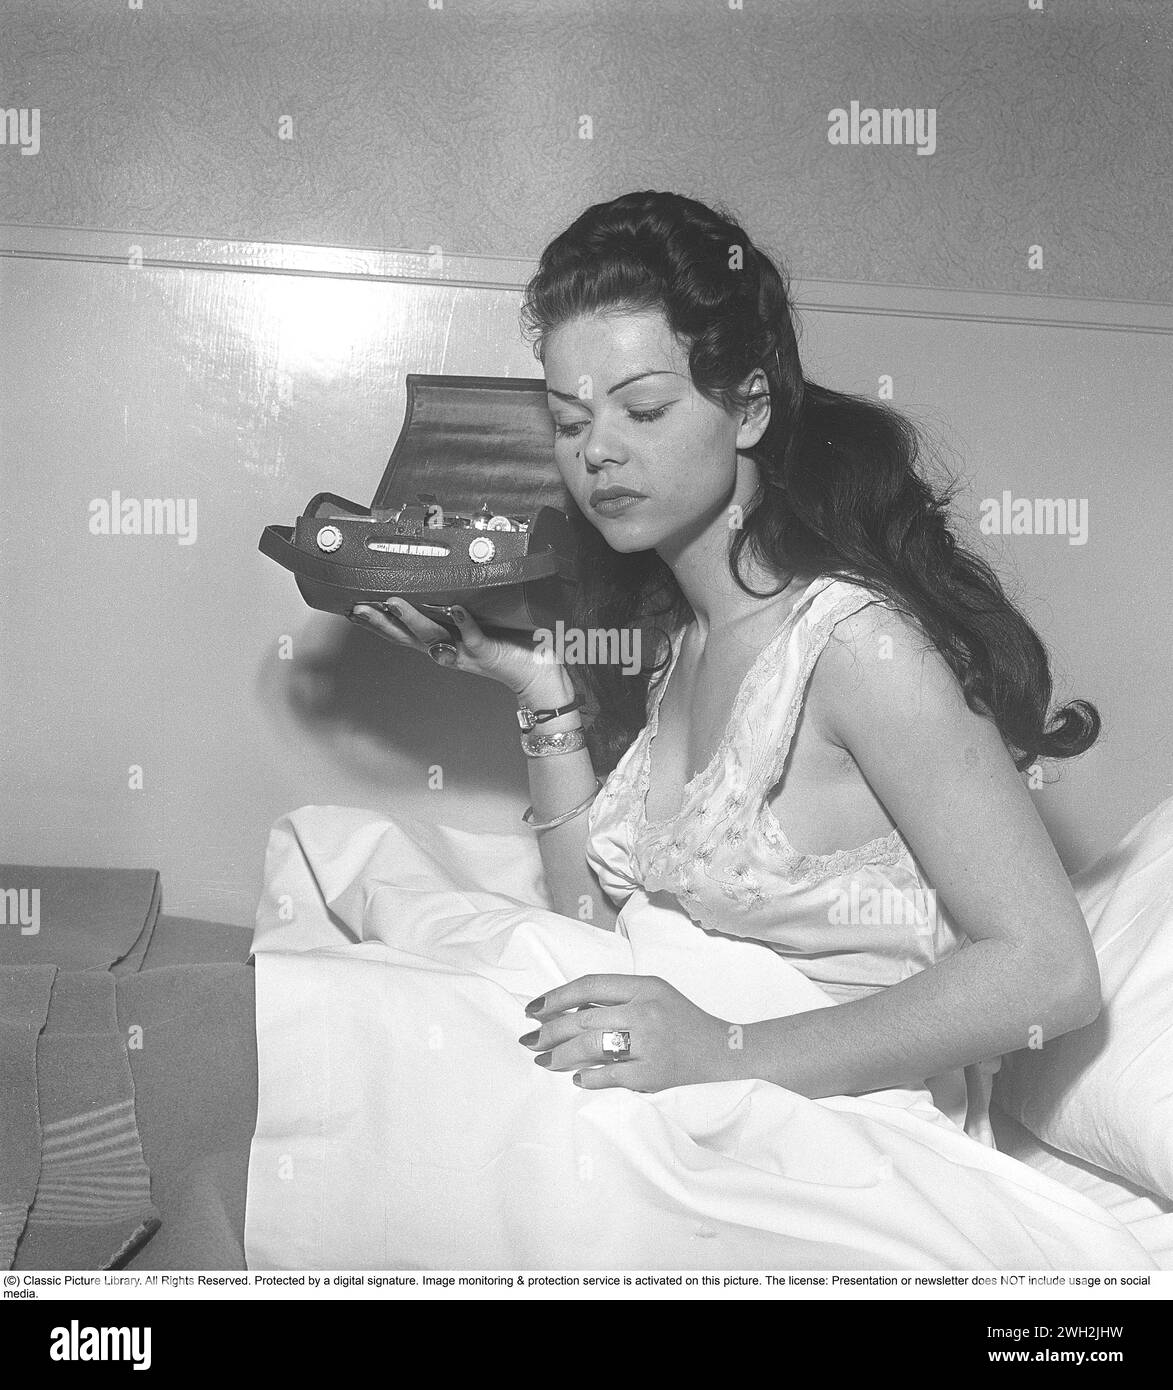 Radio in den 1950ern Eine junge dunkelhaarige Frau im Nachthemd sitzt mit ihrem tragbaren Transistorradio im Bett. Ein ungerades Modell, bei dem das äußere Gehäuse geöffnet und das Innere des Funkgeräts mit seinen Transistoren und Komponenten deutlich sichtbar ist. Schweden 1951. Kristoffersson Ref. BB29-6 Stockfoto